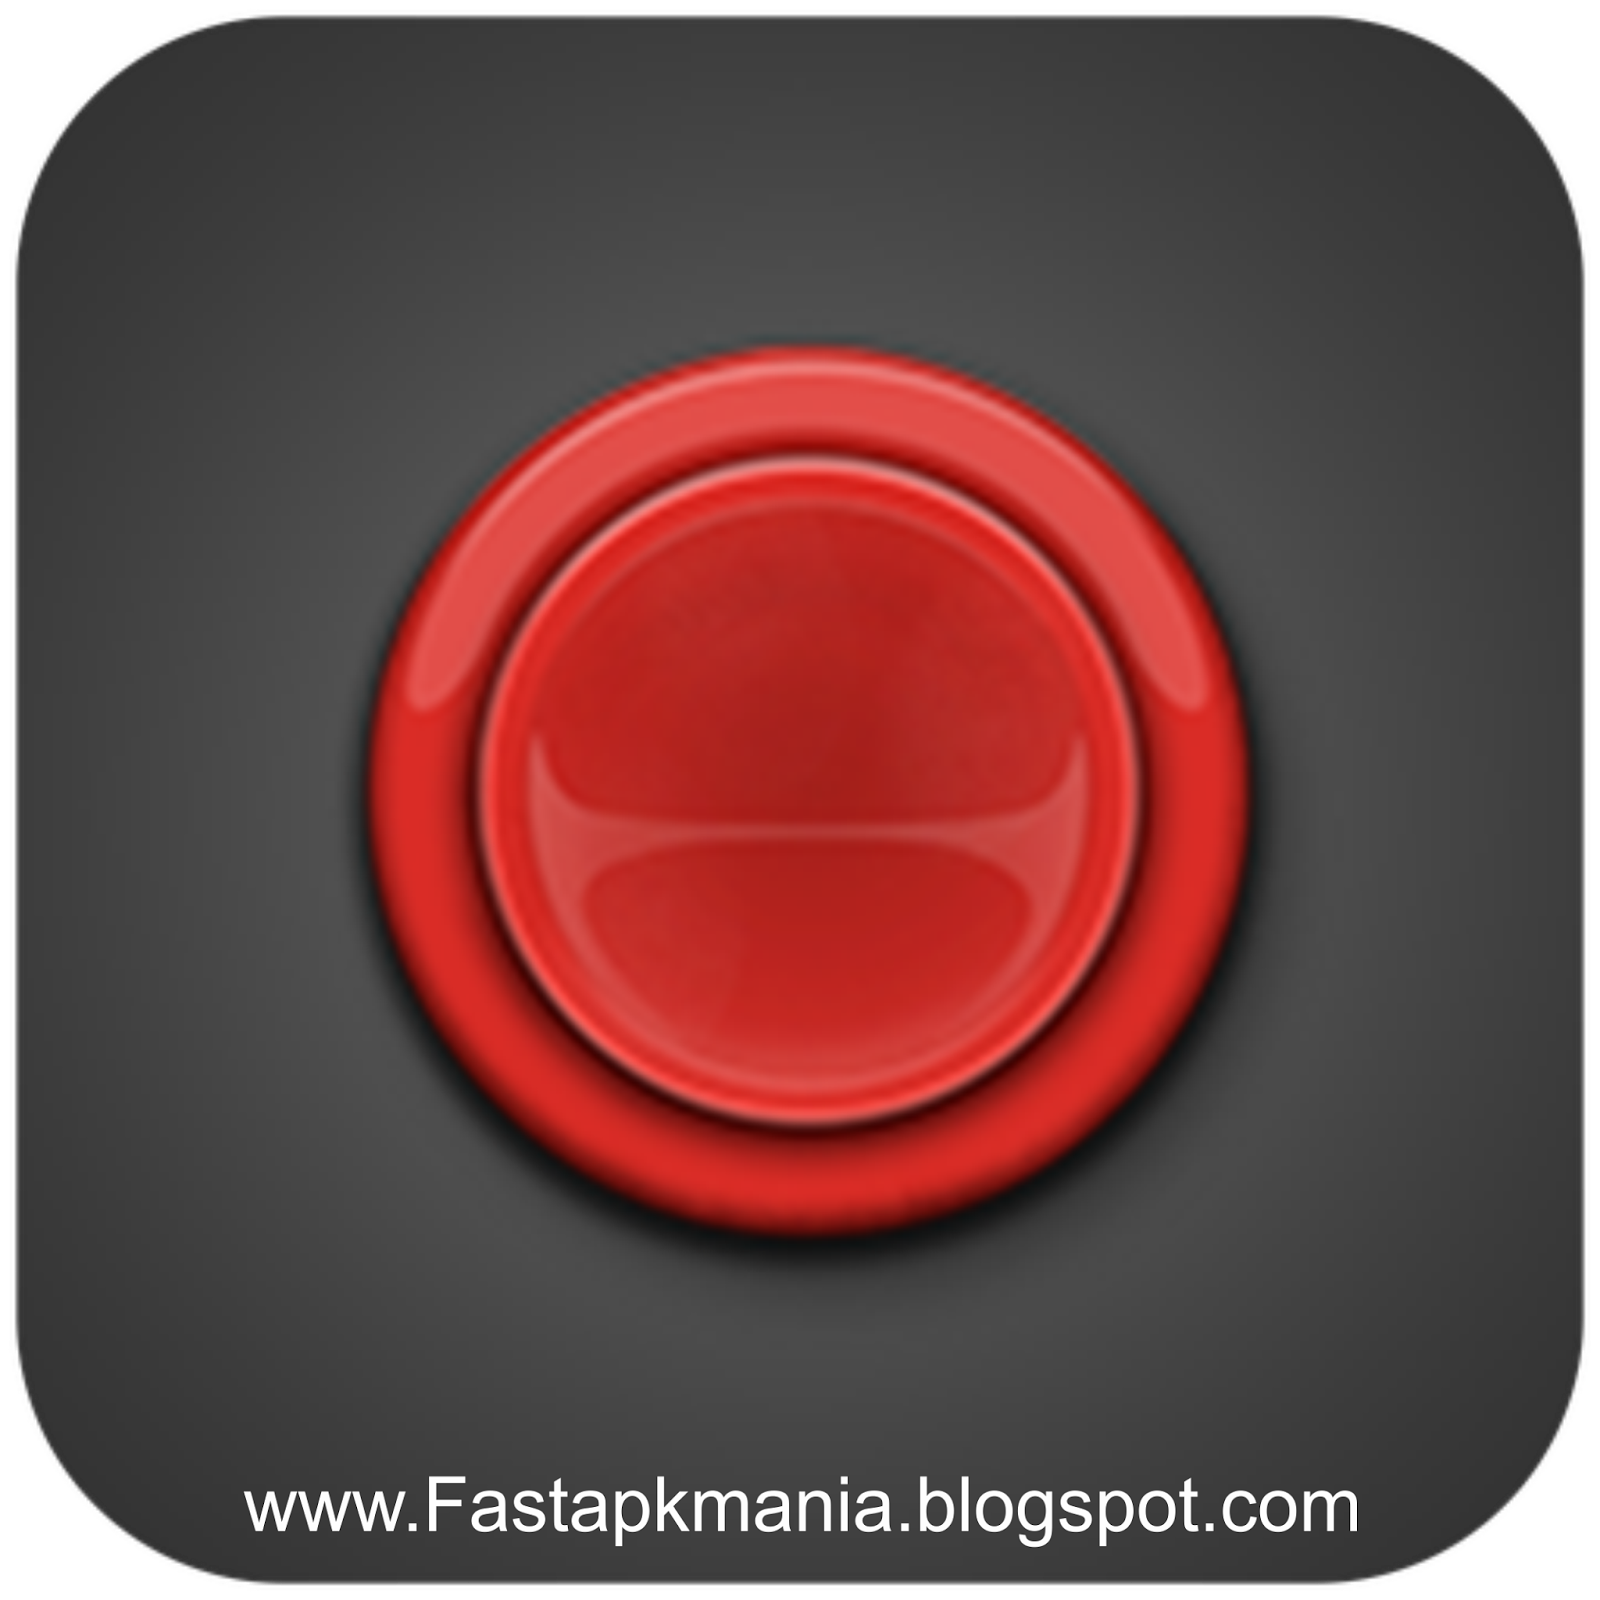 Красная кнопка игра. Bored button - игры. Save красная кнопка для игры. Press button игра. После красной кнопки